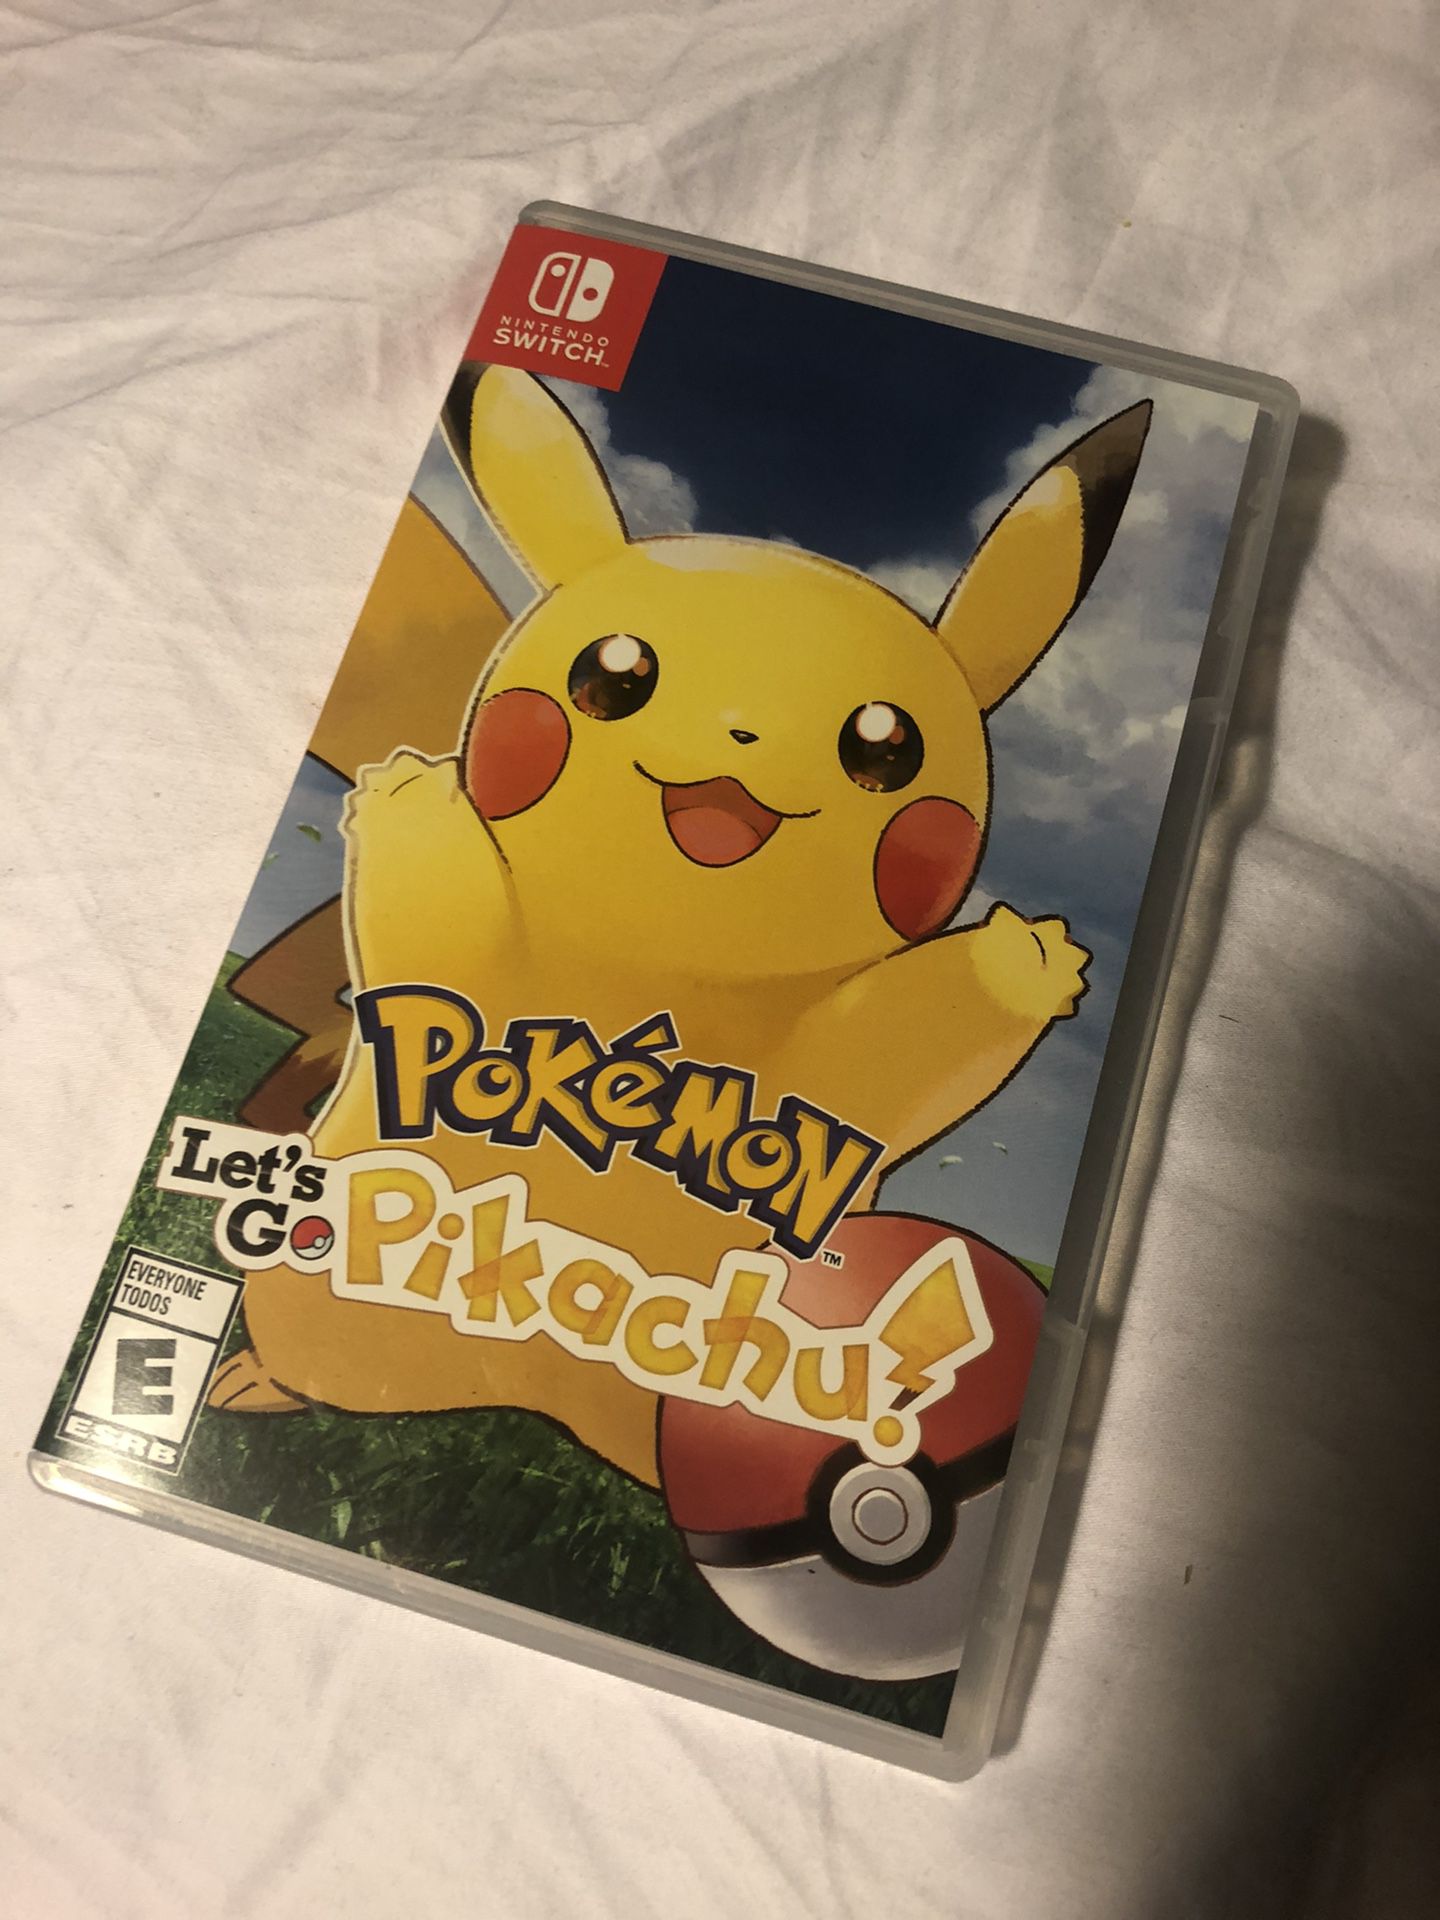 Pokémon Pikachu for Nintendo Switch